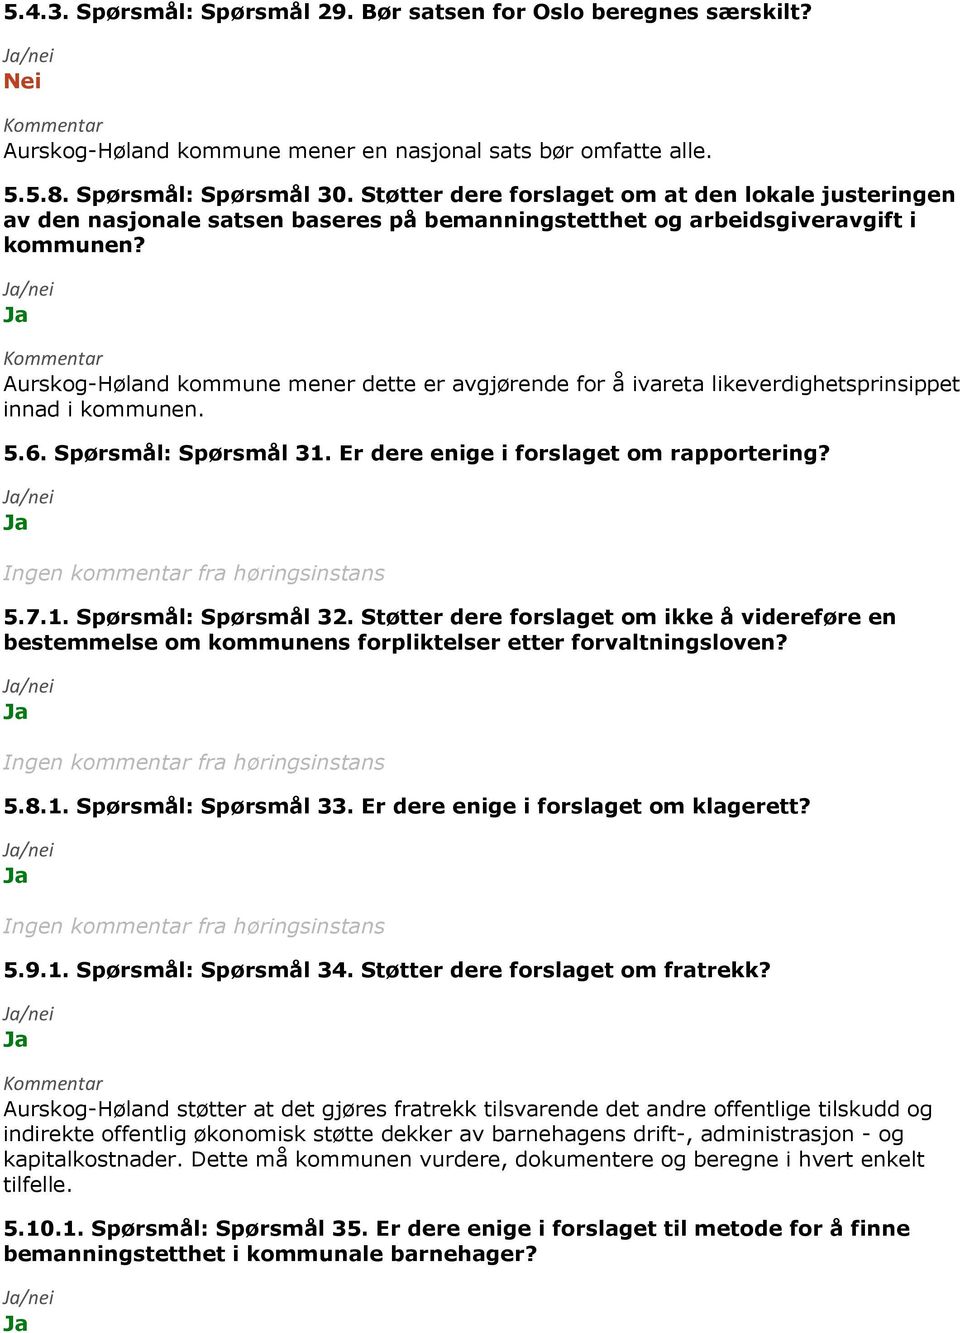 Aurskog-Høland kommune mener dette er avgjørende for å ivareta likeverdighetsprinsippet innad i kommunen. 5.6. Spørsmål: Spørsmål 31. Er dere enige i forslaget om rapportering? 5.7.1. Spørsmål: Spørsmål 32.